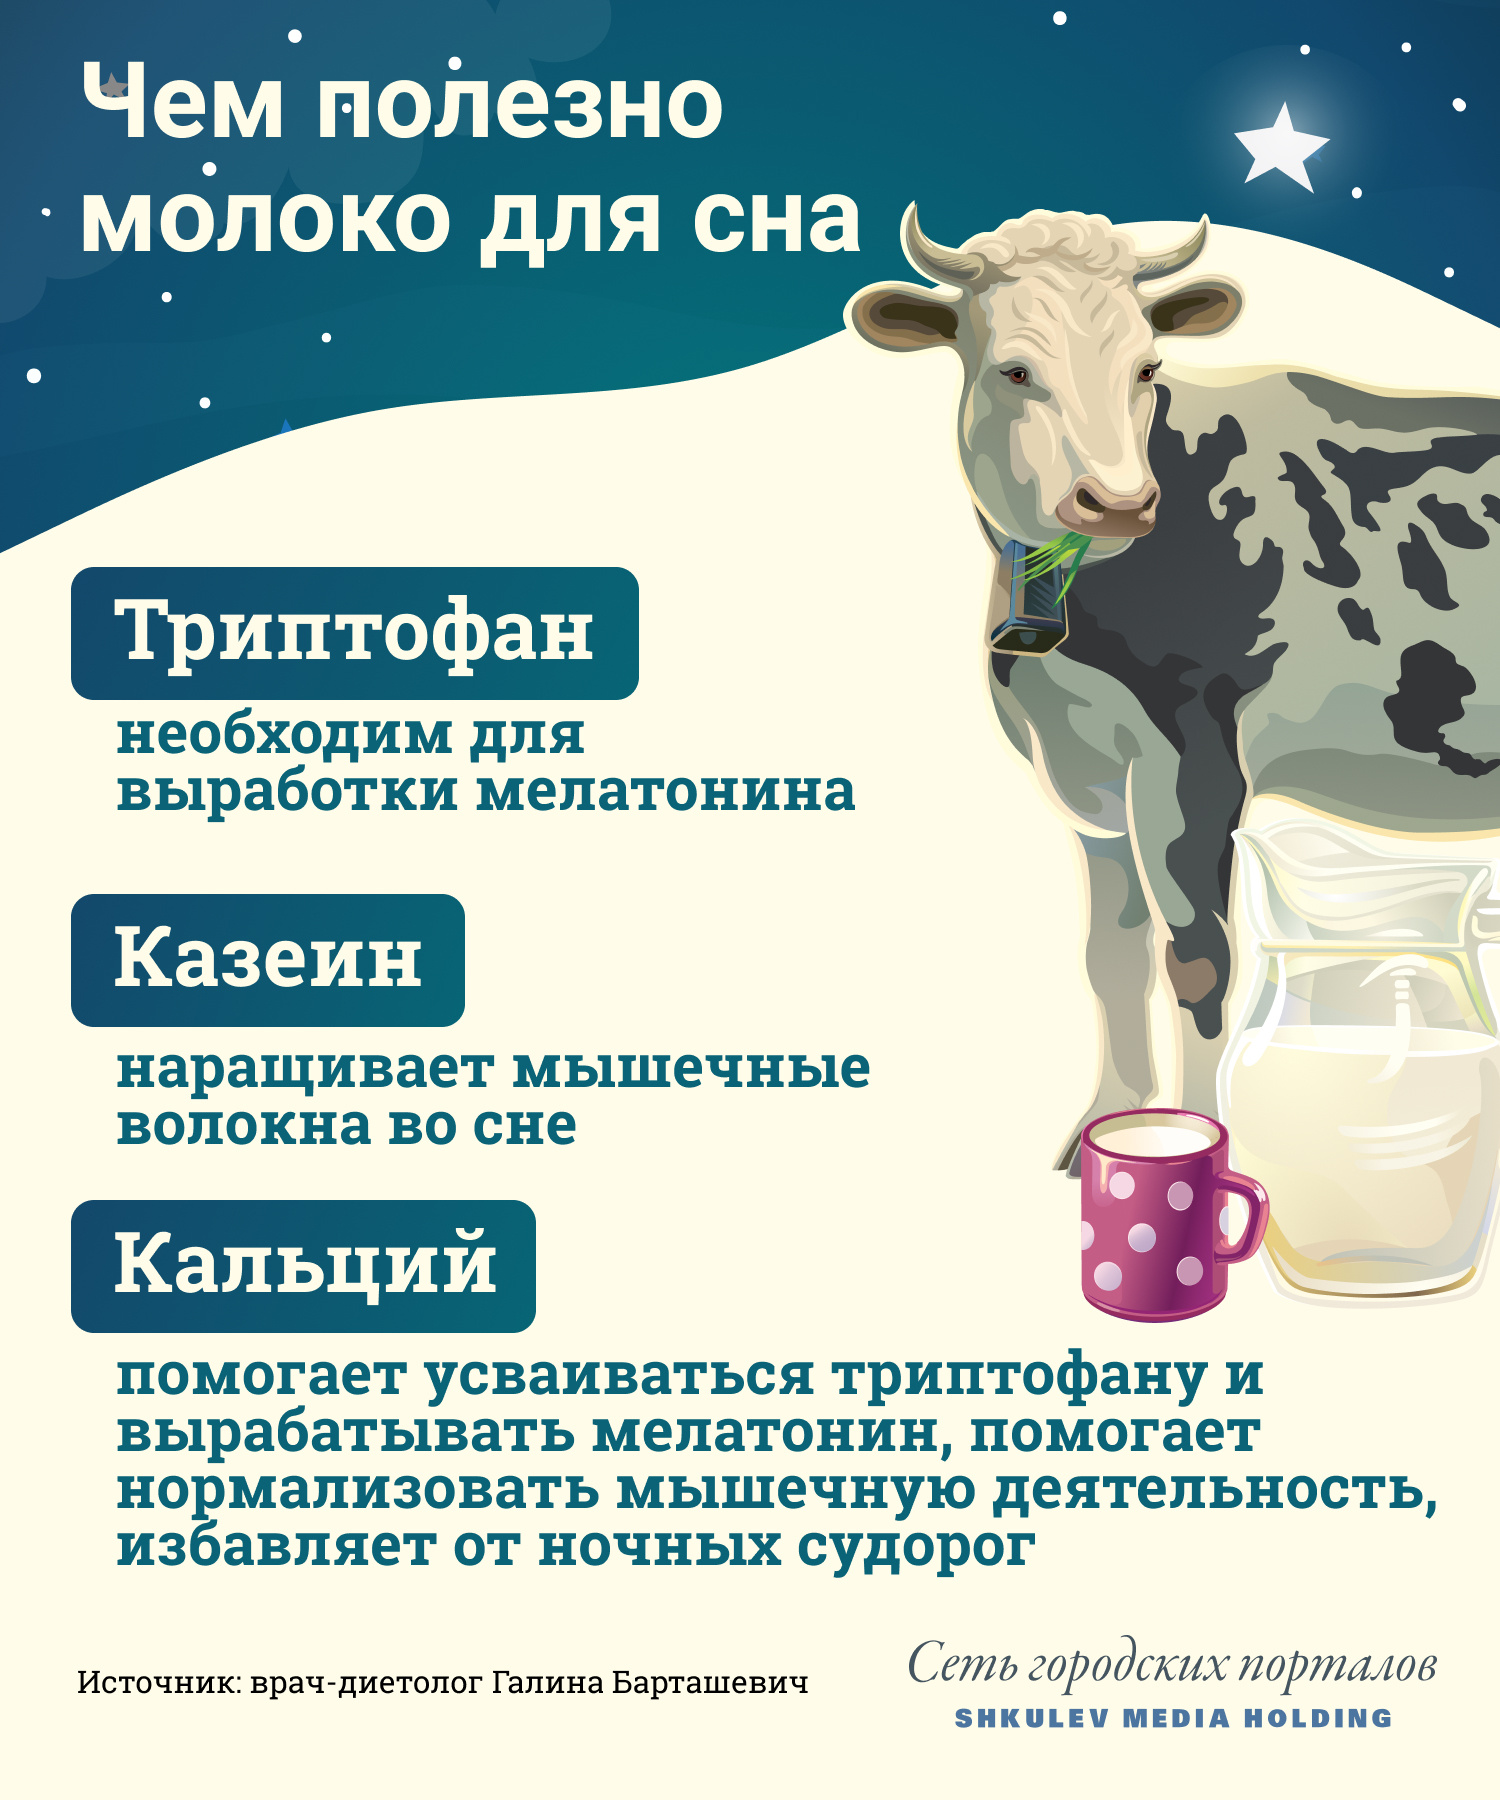 Полезные свойства молока для крепкого сна